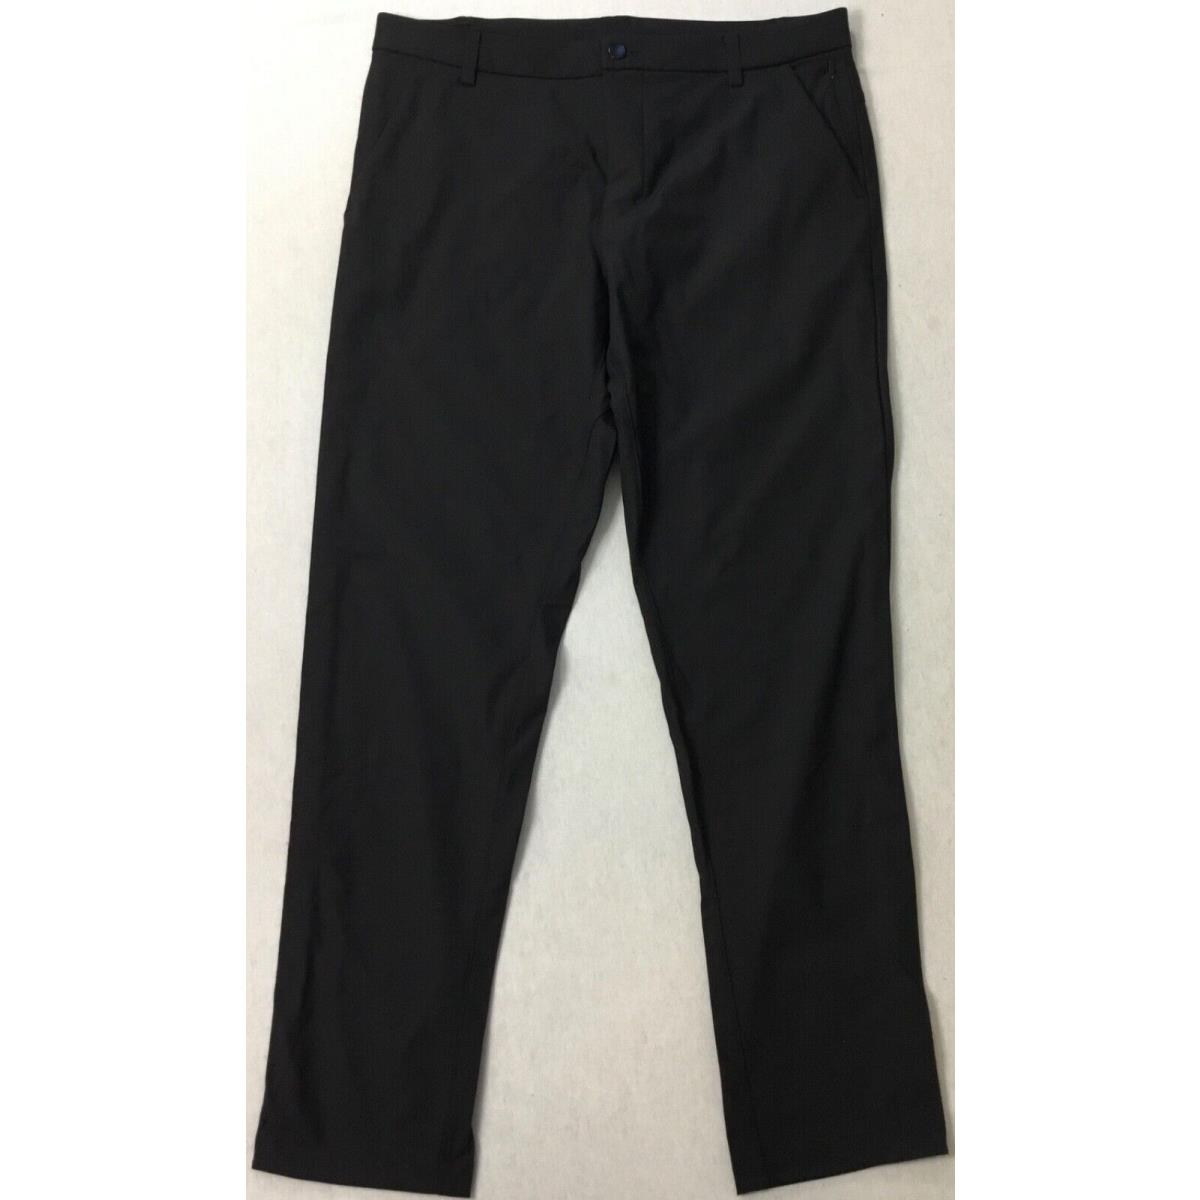 Lululemon Men s Pants Commission Pant Classic 32 Length Black LM5710S Size 32